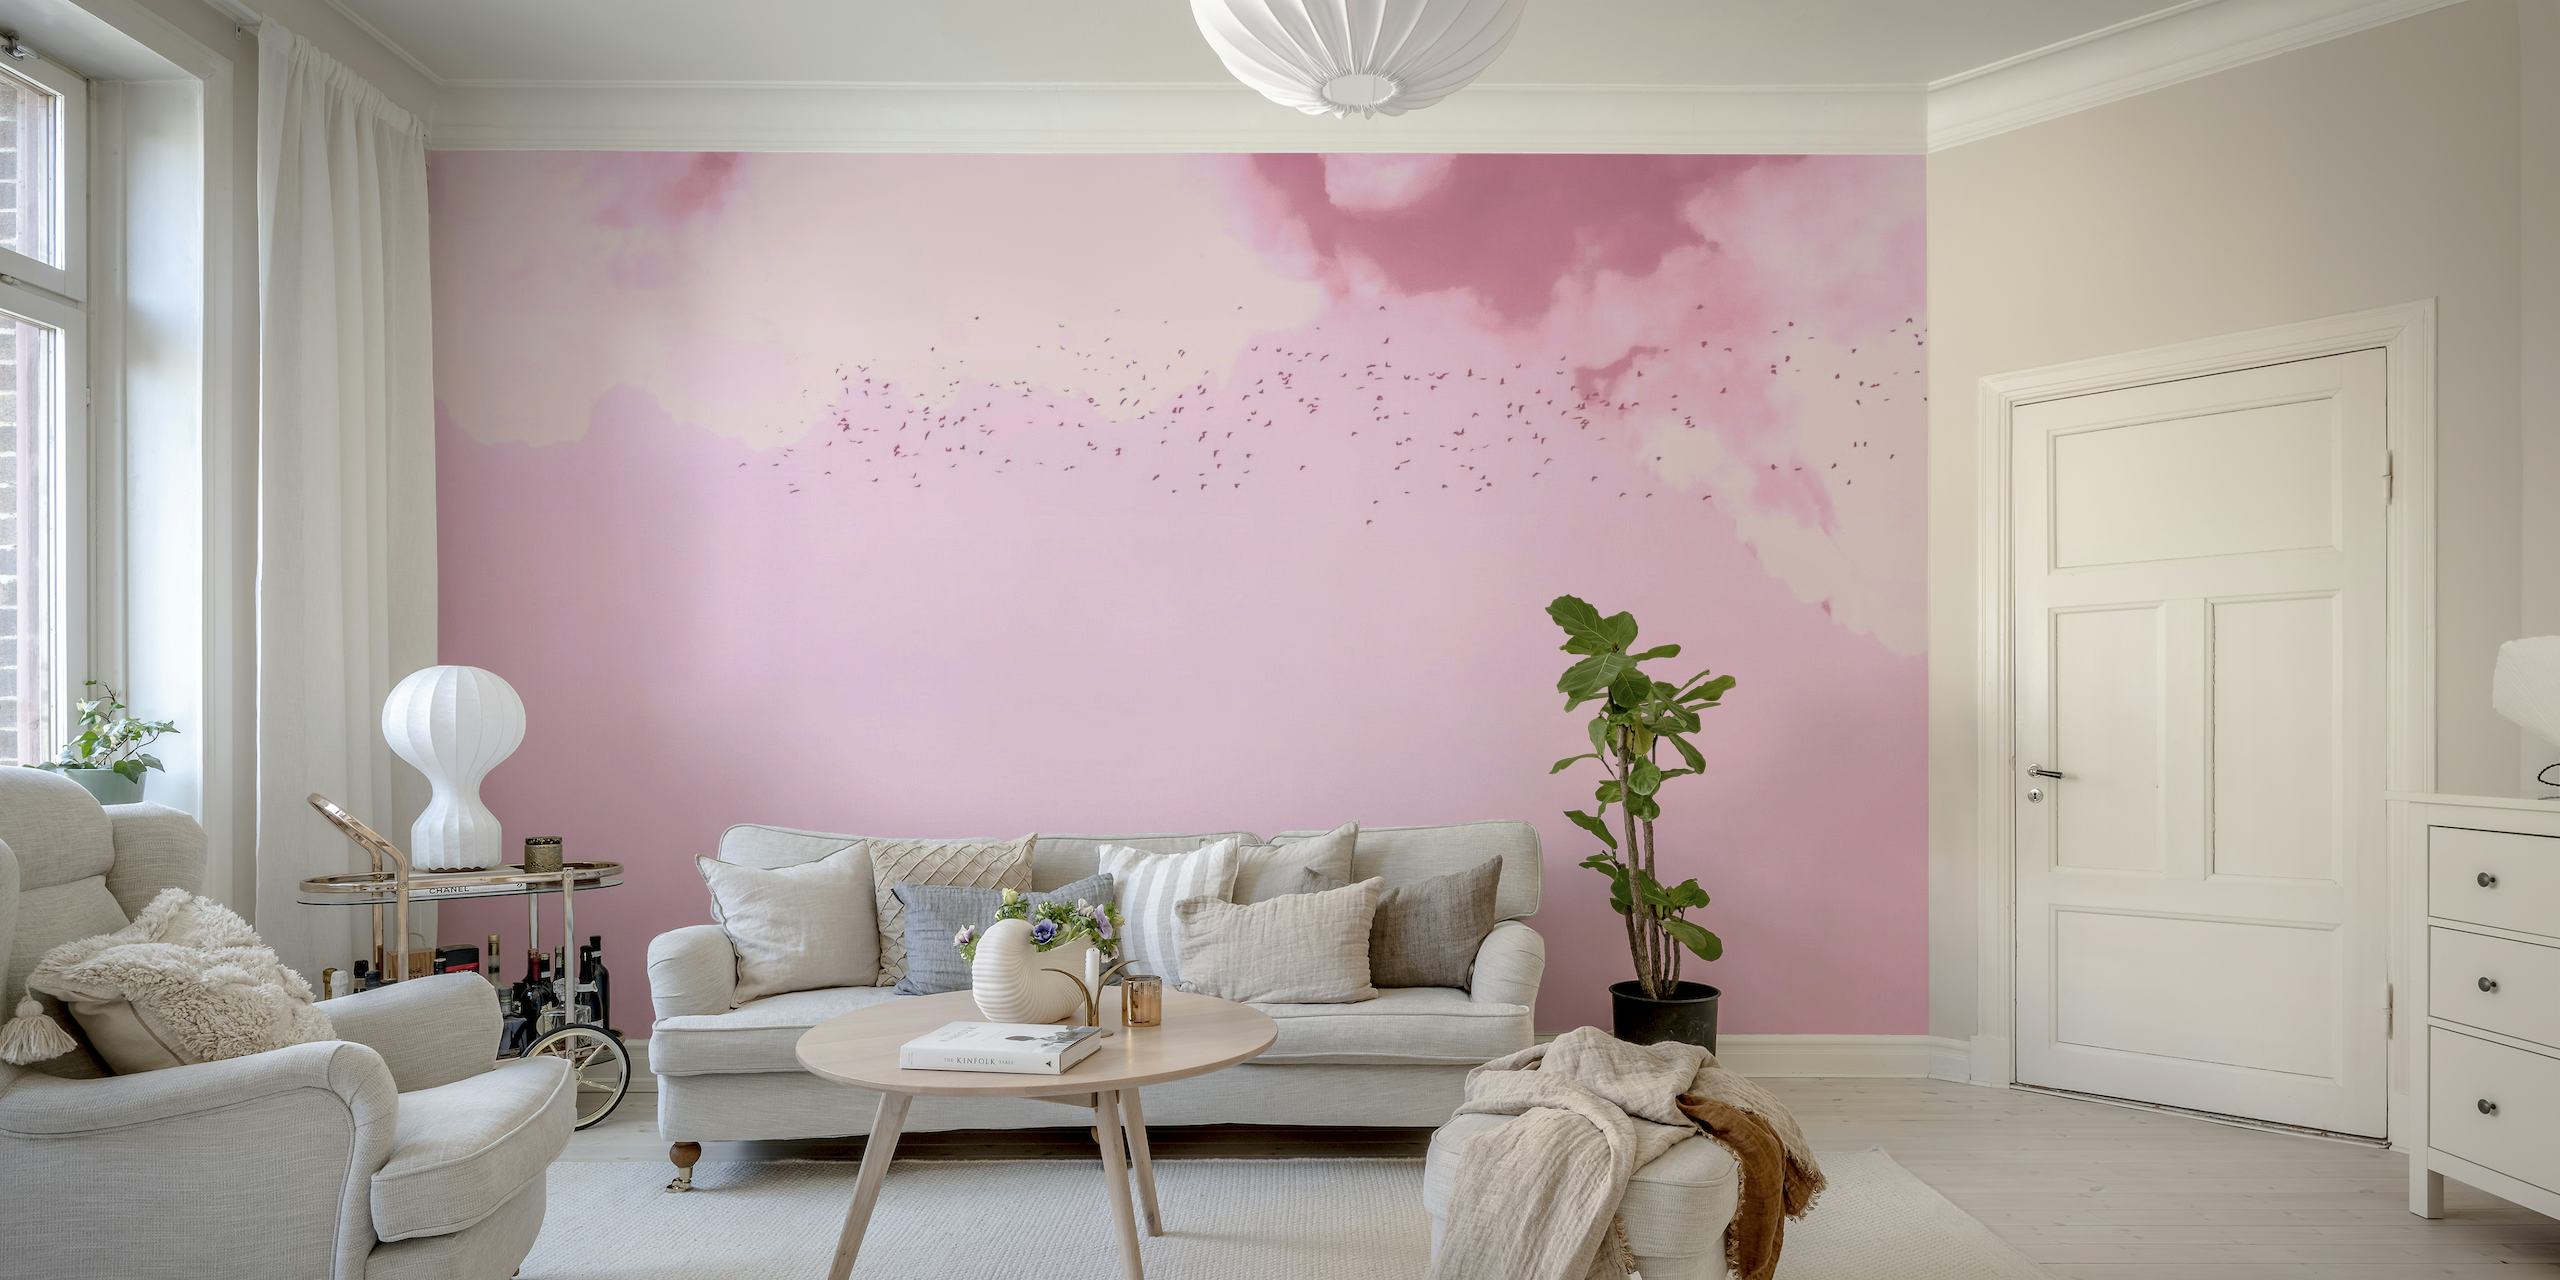 Um mural de parede rosa e magenta sonhador representando pássaros voando entre nuvens suaves